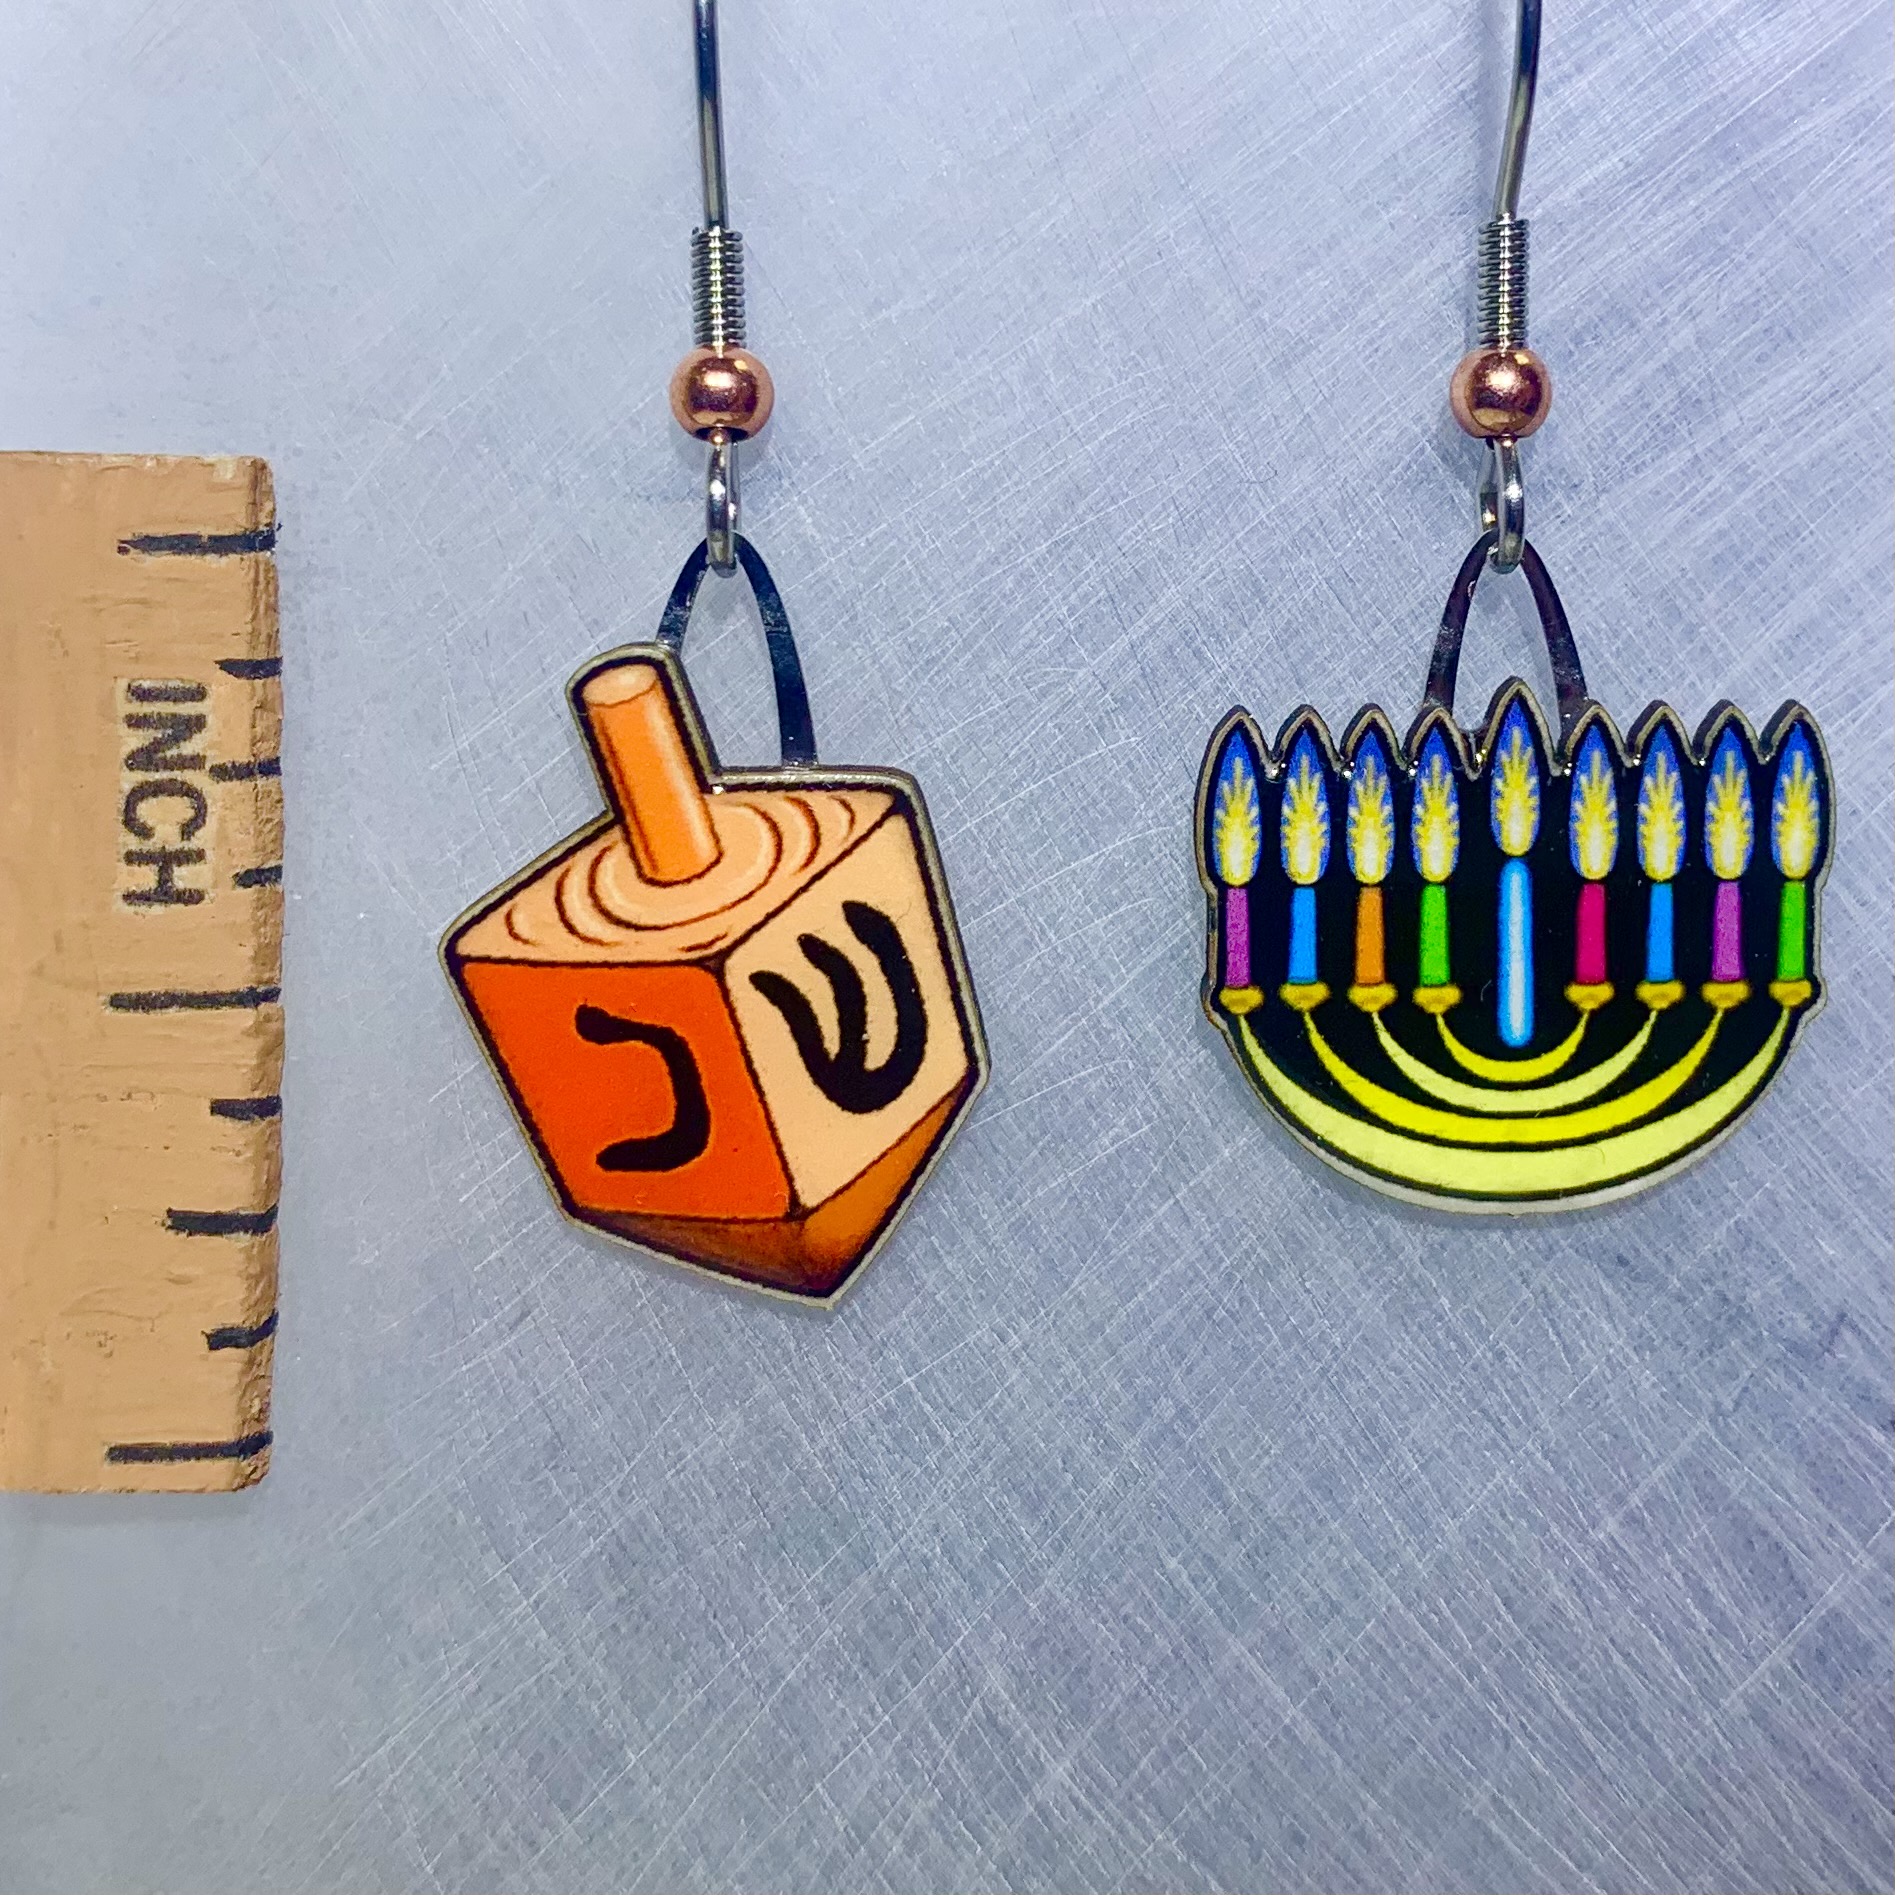 Picture shown is of 1 inch tall pair of earrings of Hanukkah Menorah.